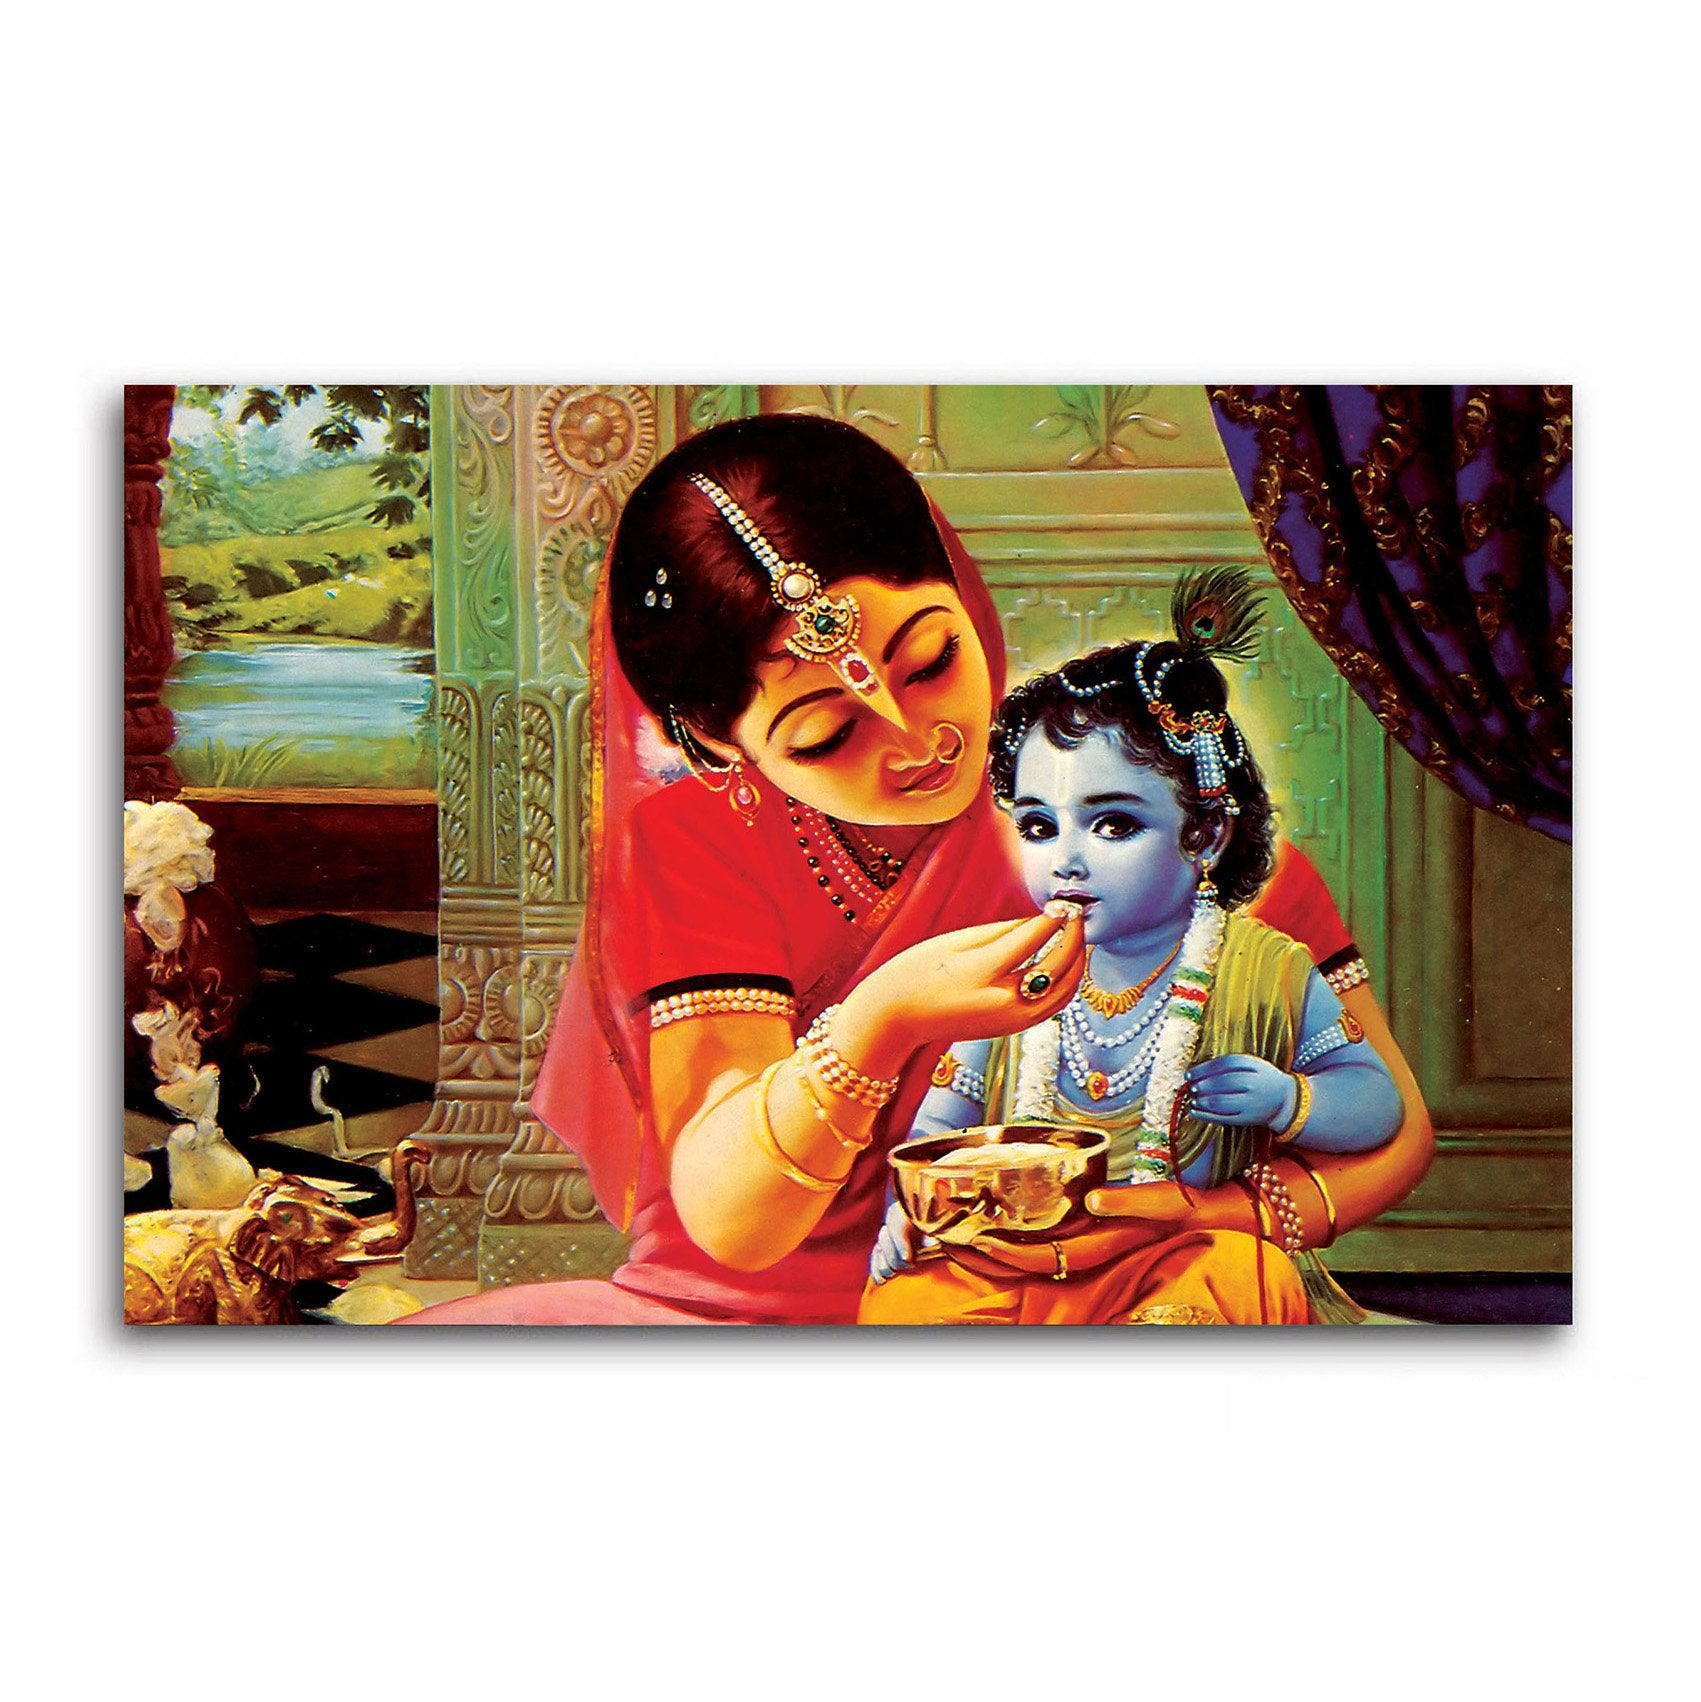 Shri Krishna With Maa Yashoda